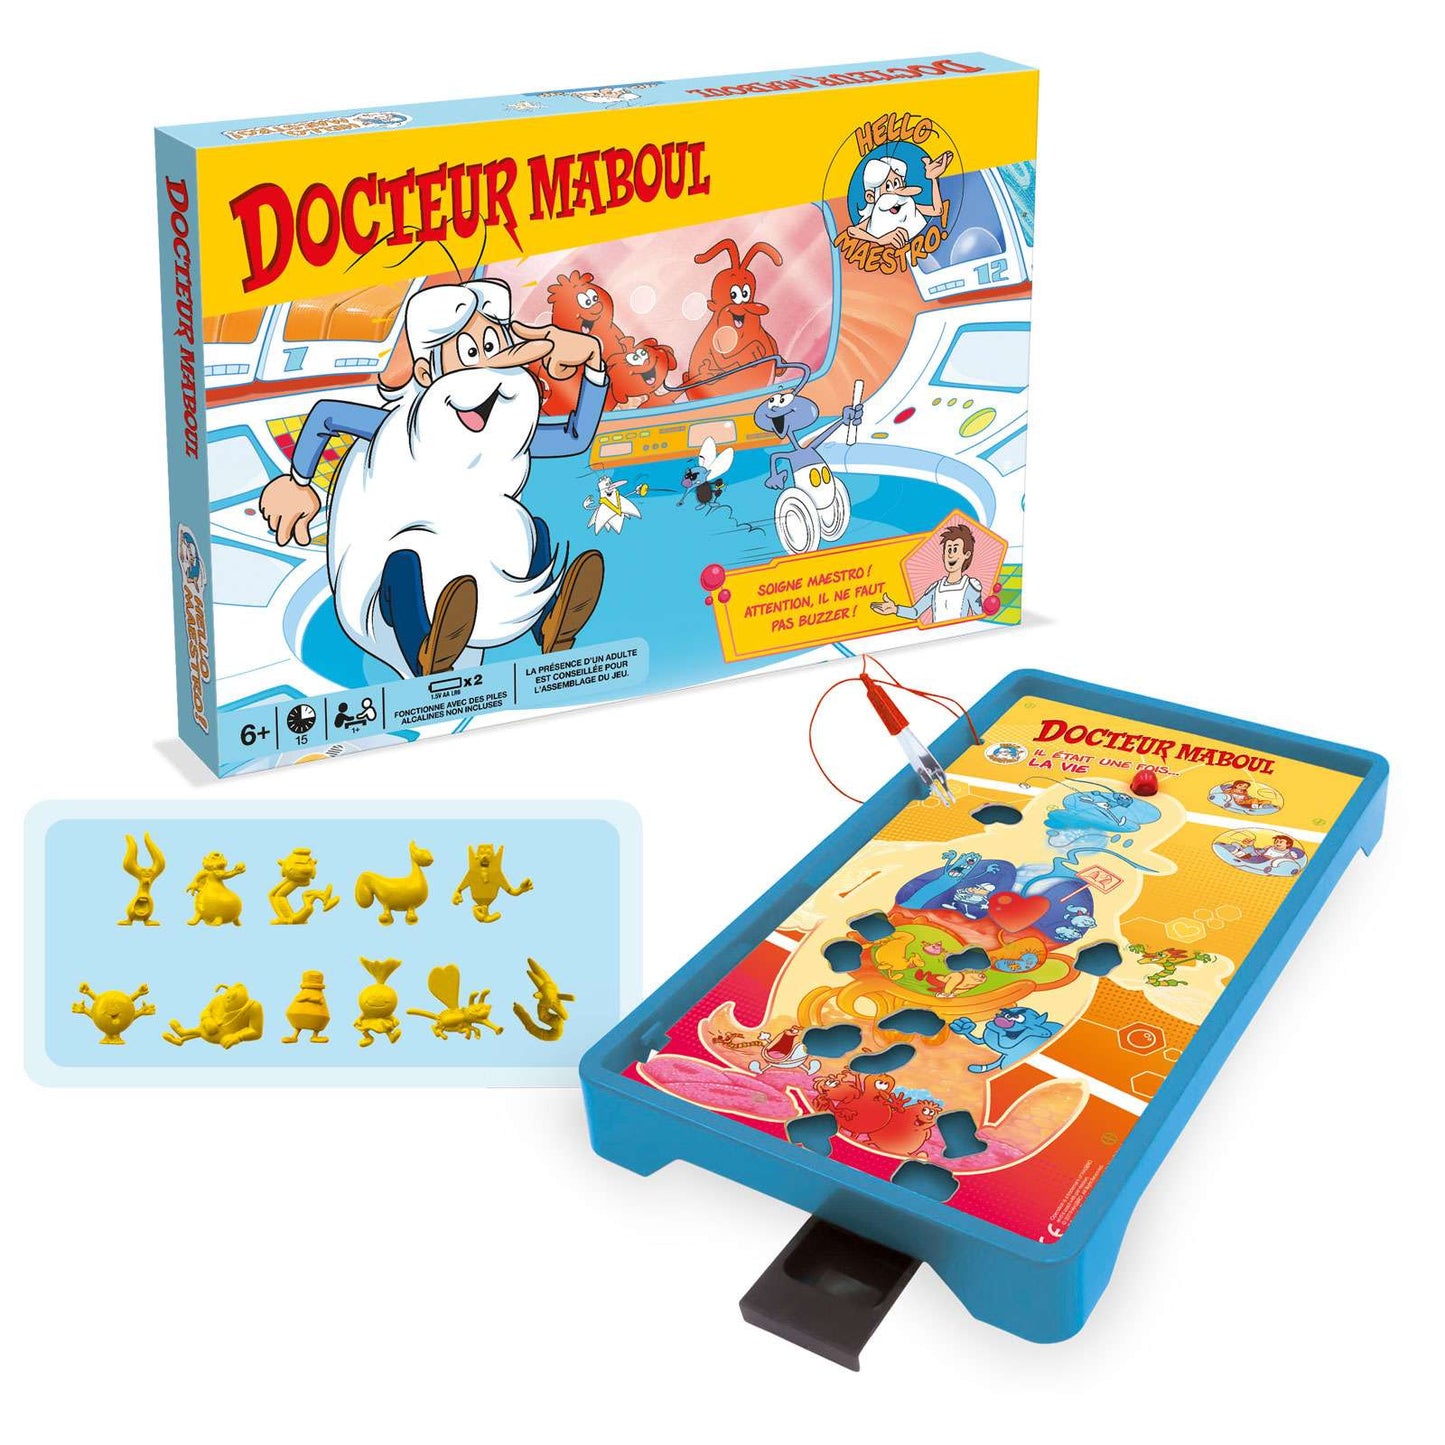 Doctor MABOUL - Hello Maestro La Vie - Board game - French version